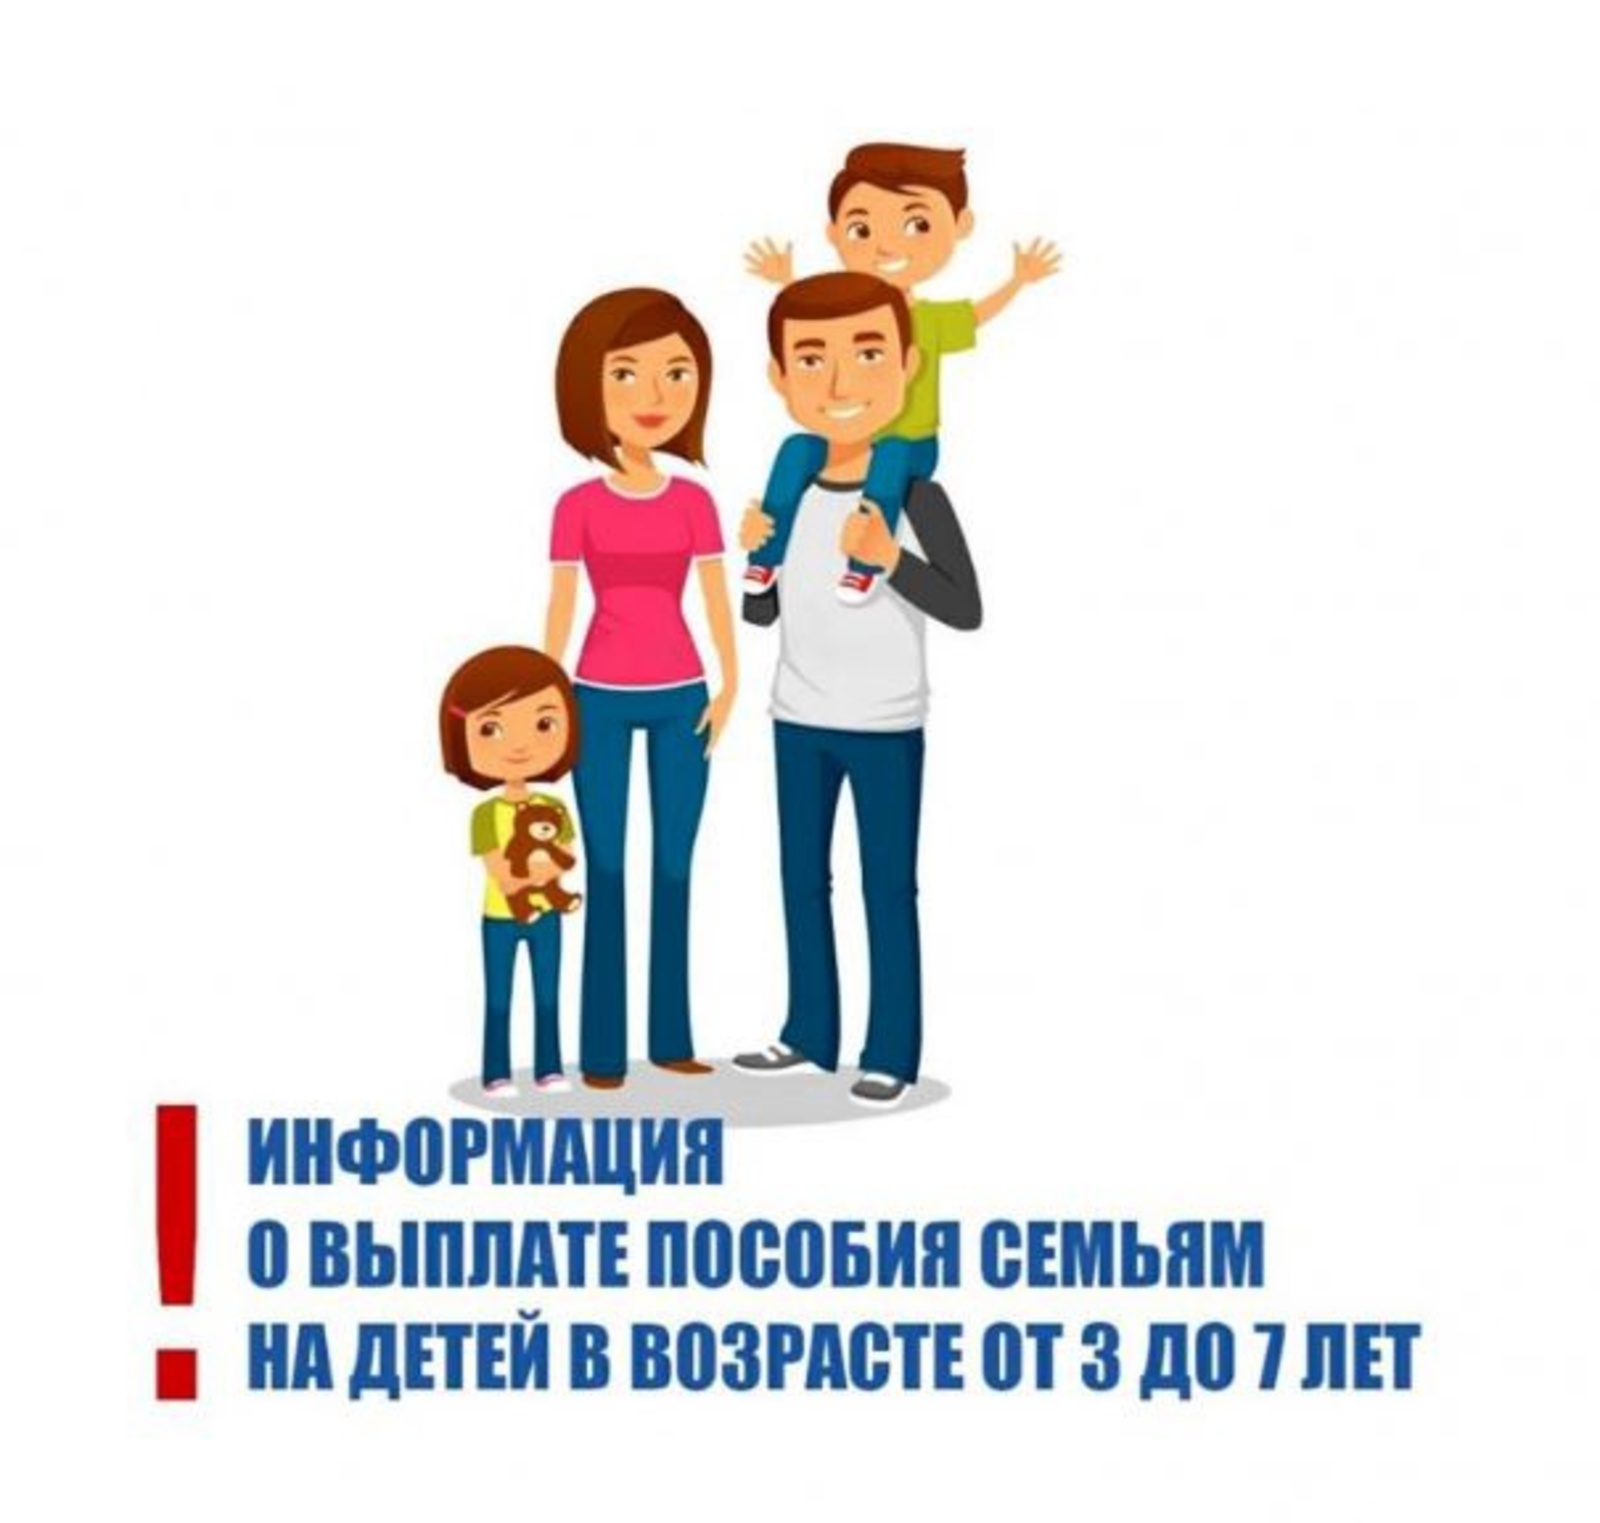 Важная информация о выплате пособия семьям на детей от 3 до 7 лет